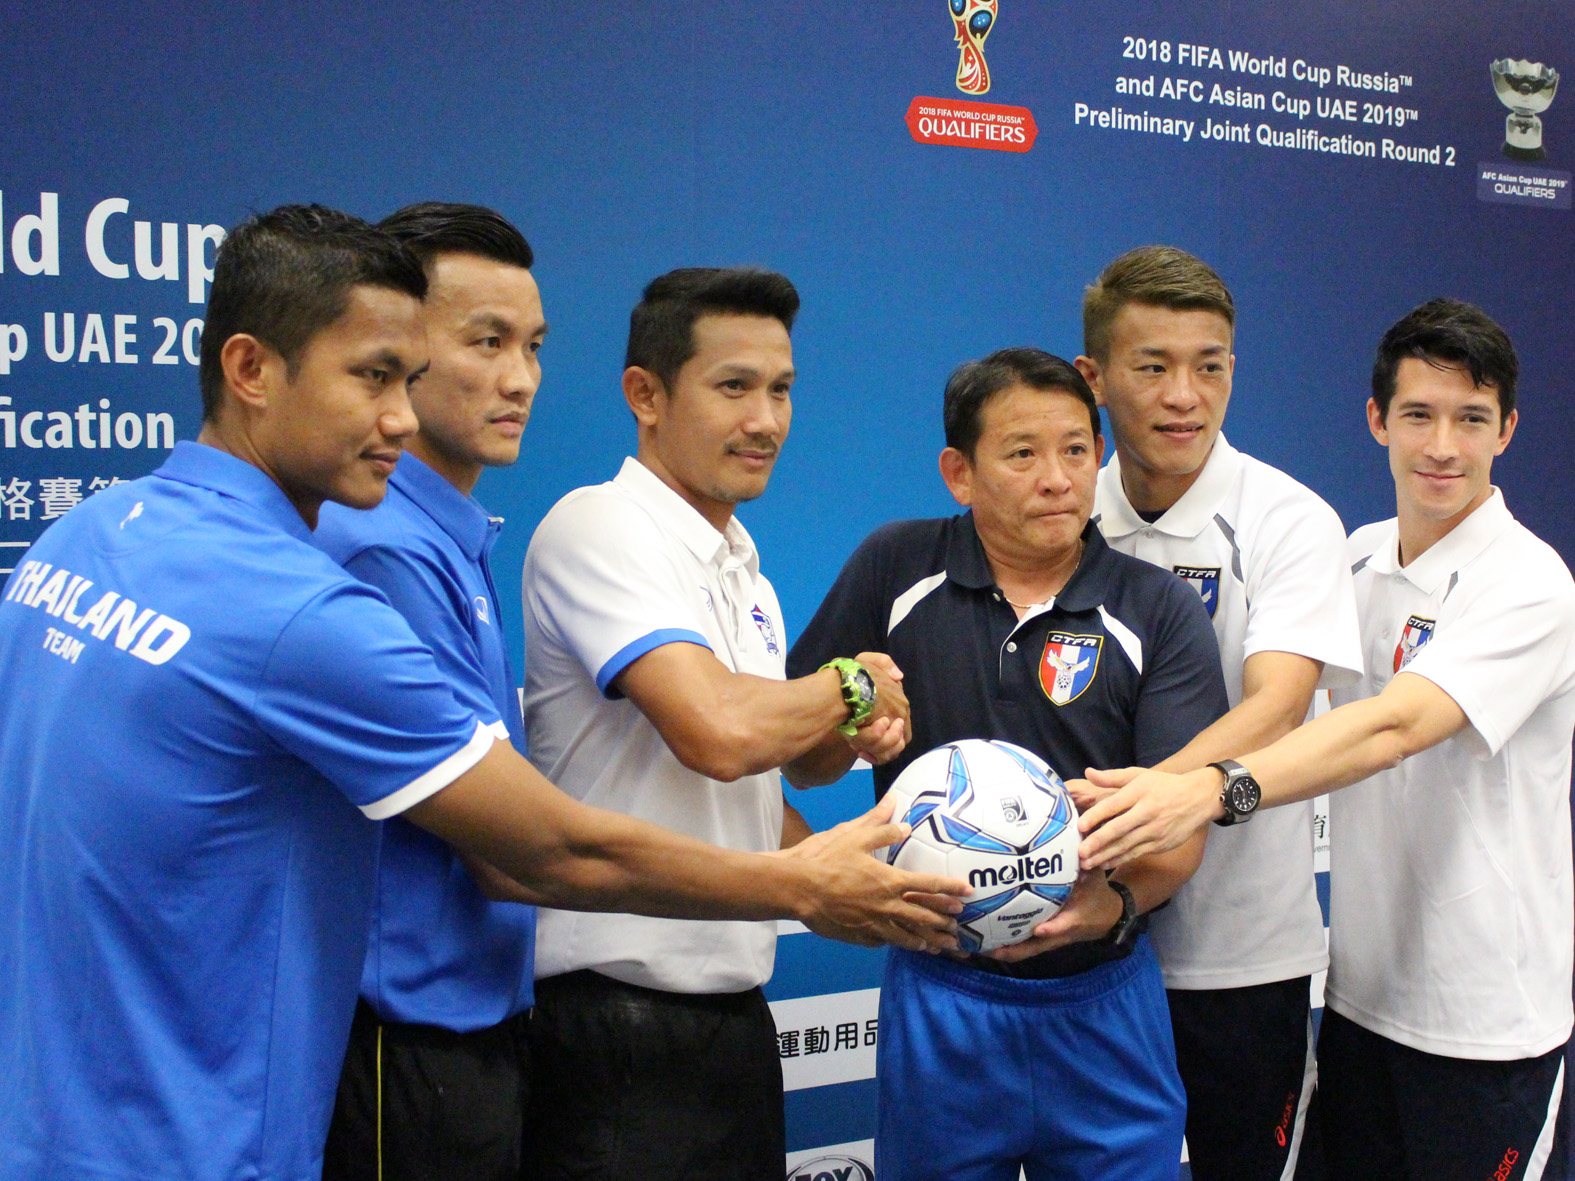 ร่วมเชียร์นักฟุตบอลทีมชาติไทย ในศึกฟุตบอลโลกรอบคัดเลือกโซนเอเชีย